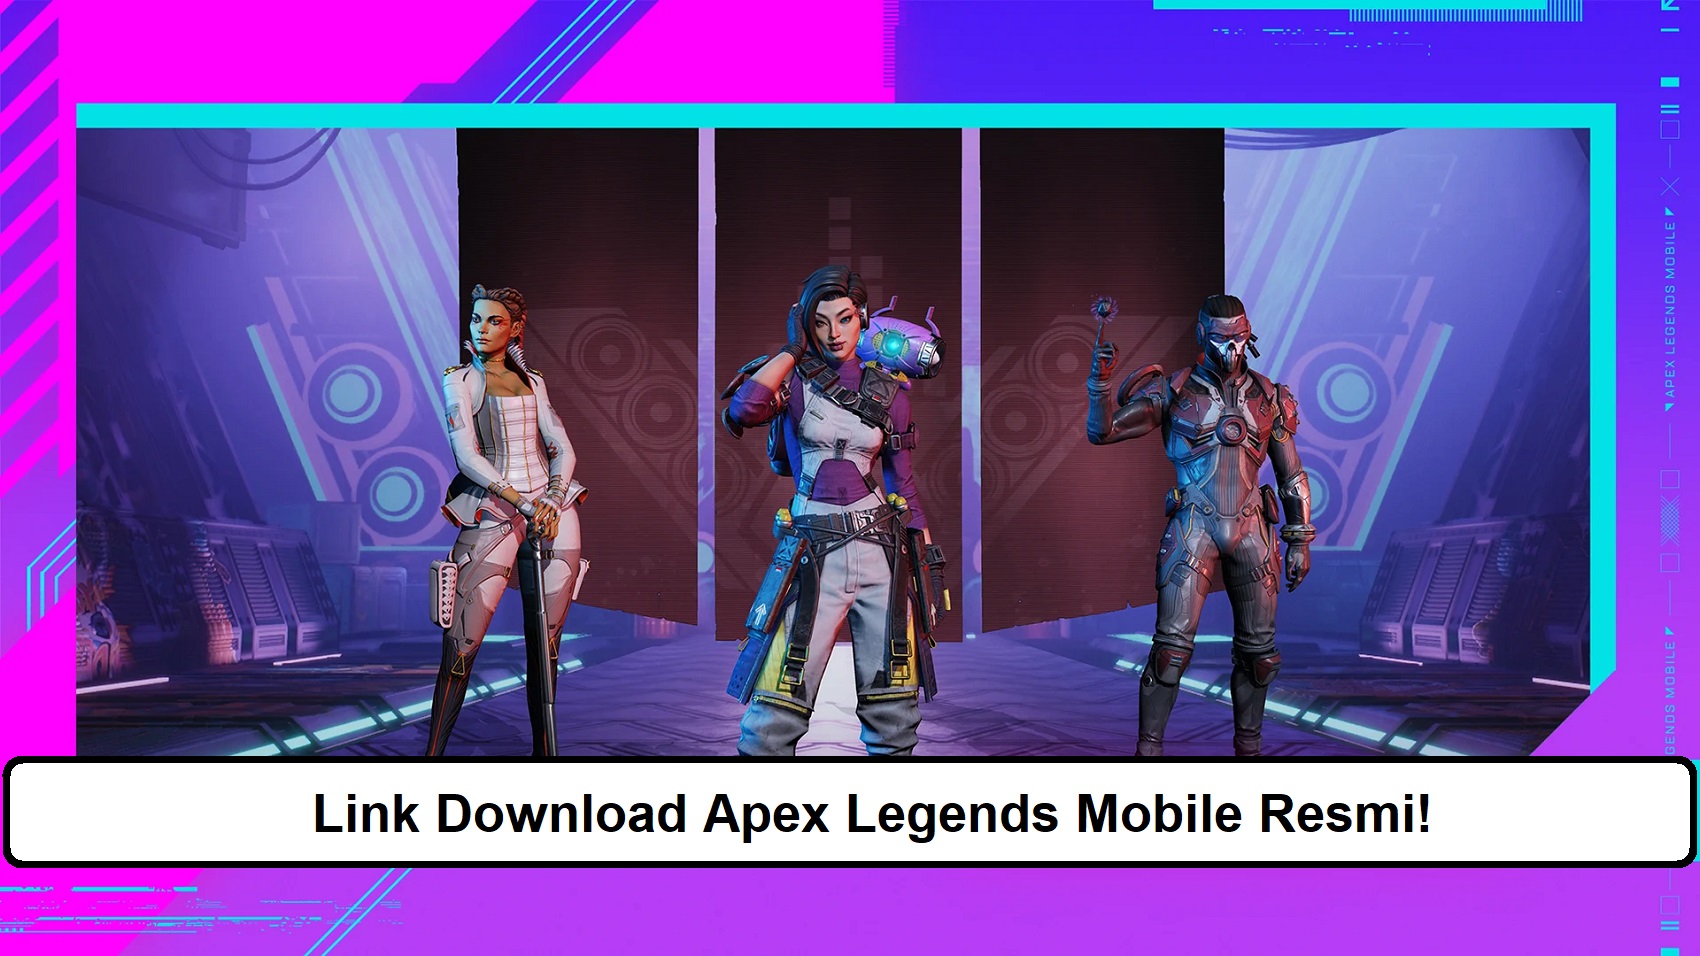 Link Download Apex Legends Mobile Resmi!